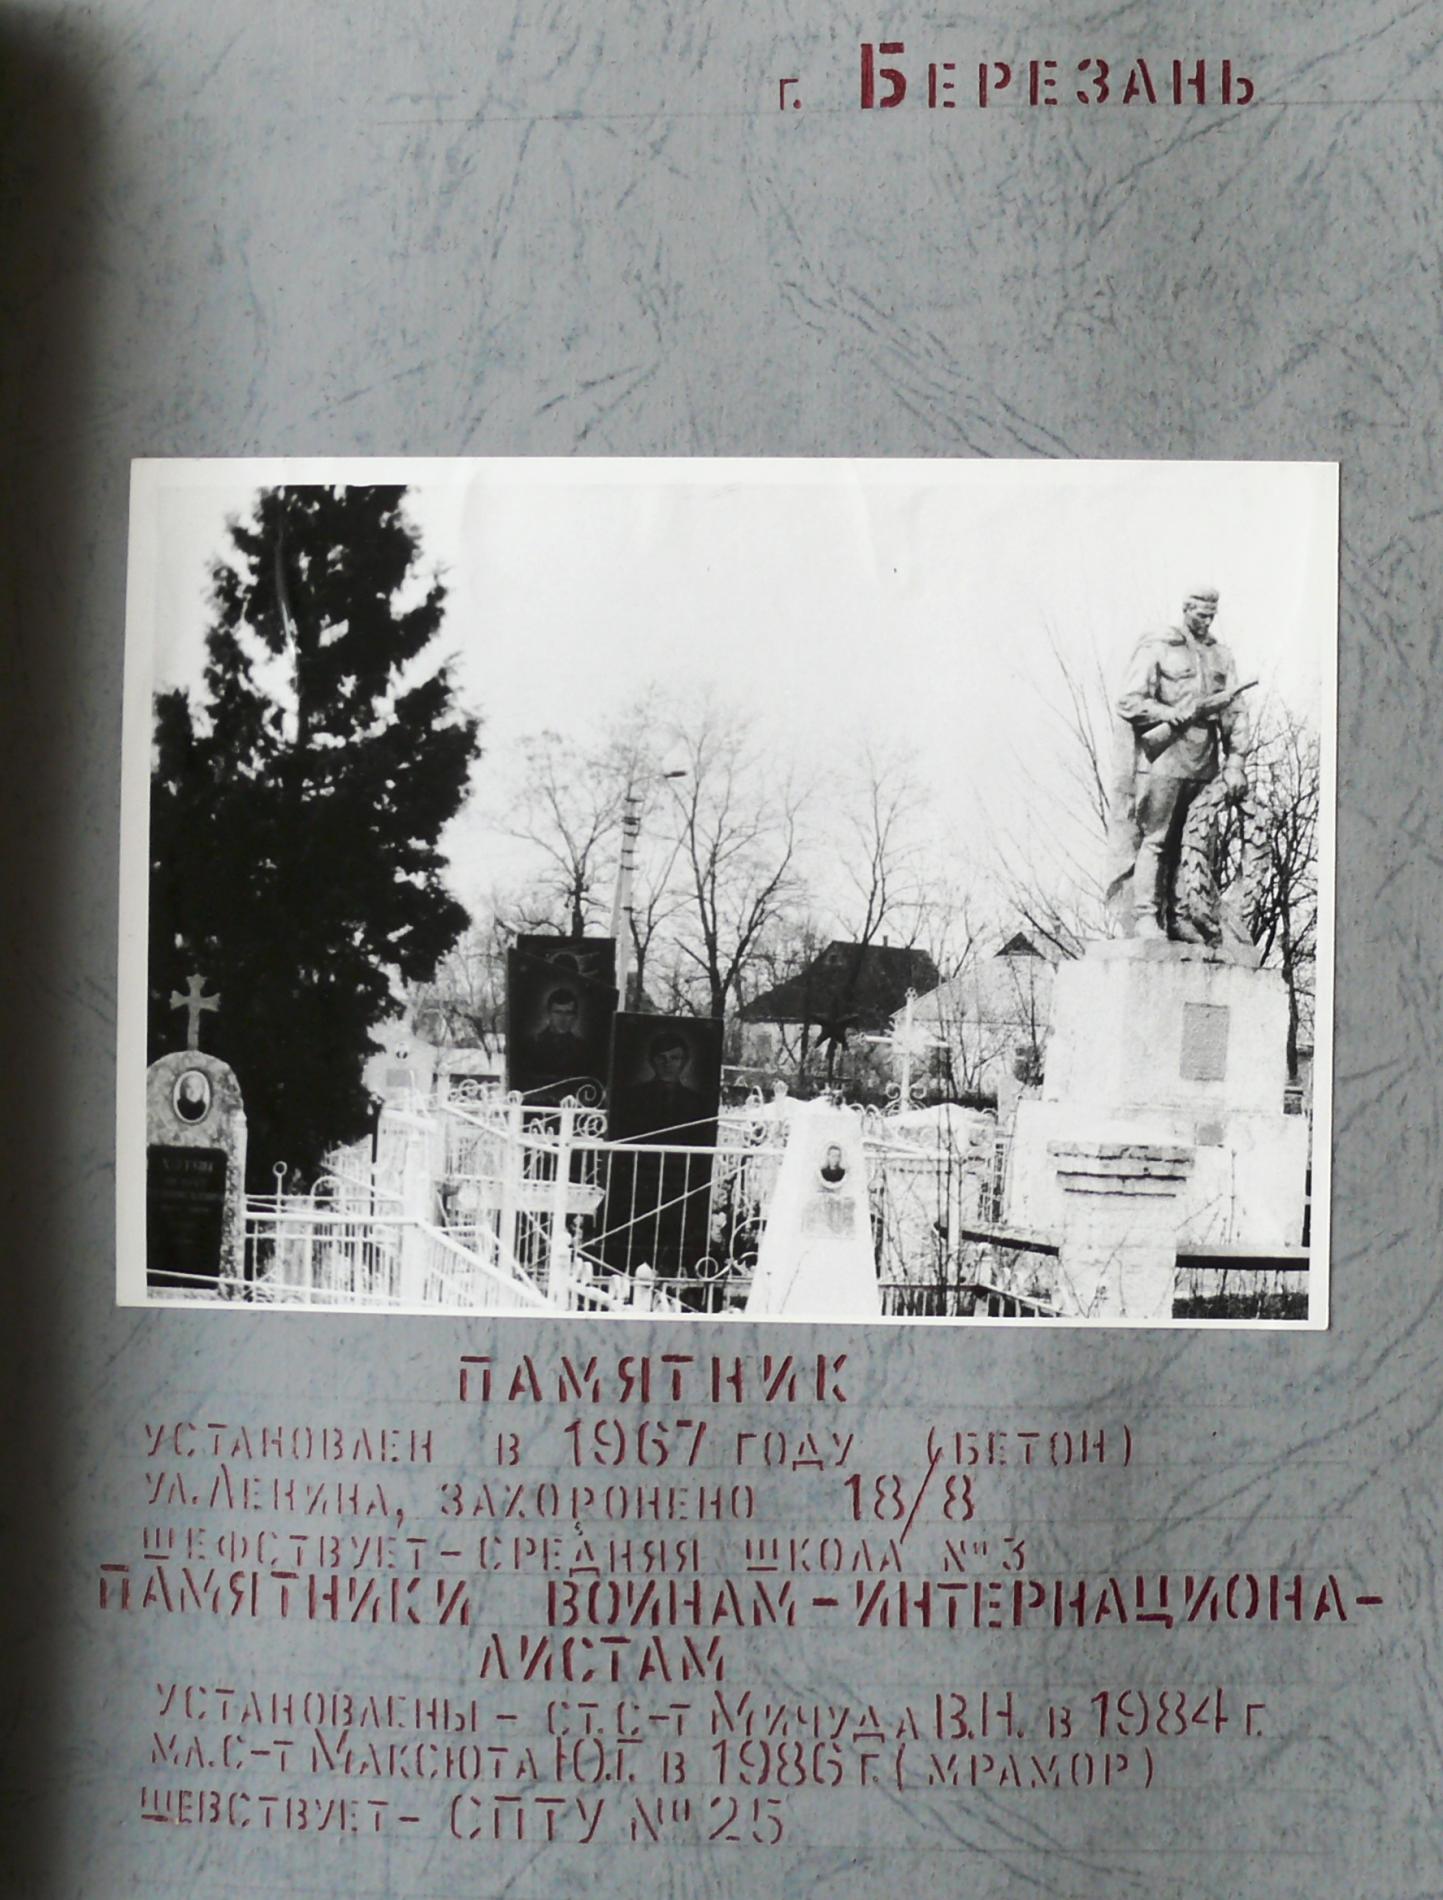 Братская могила на кладбище по ул. Ленина в г. Березань Киевской обл.